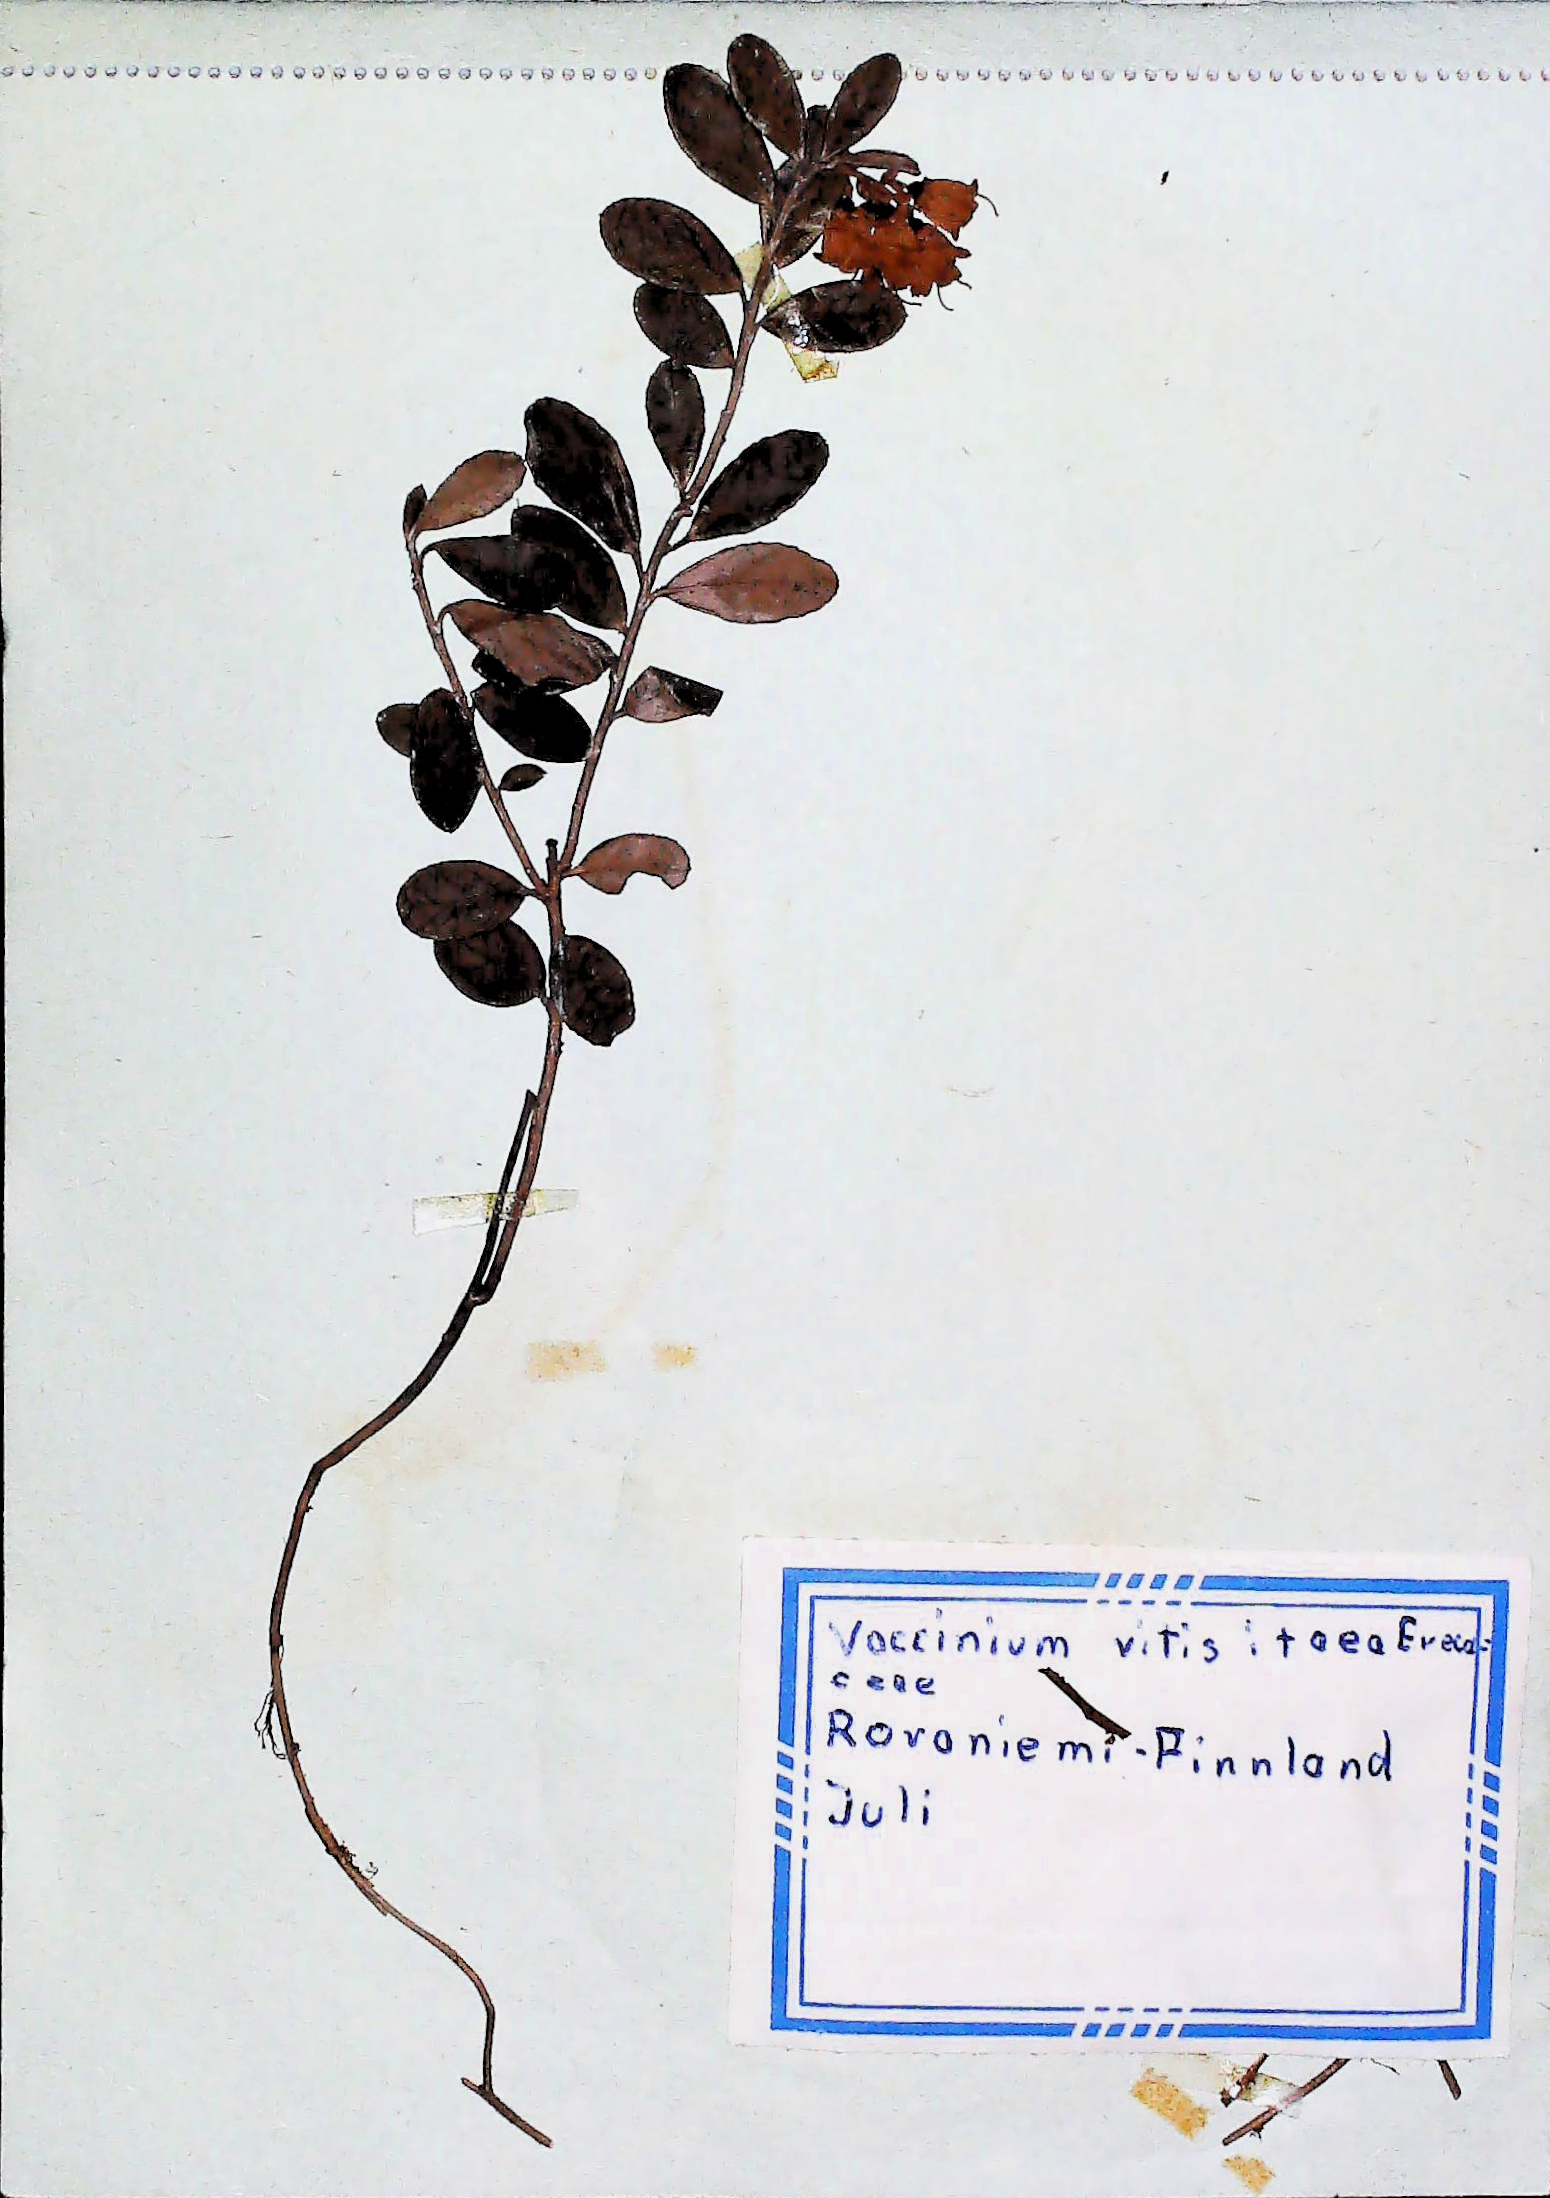 In Finnland nördlich von Rovaniemi im Juli des Jahres 1966 gefundene und anschließend gepresste und getrocknete Pflanze in meinem Herbarium aus dem Jahre 1966. Erwin Thomasius.